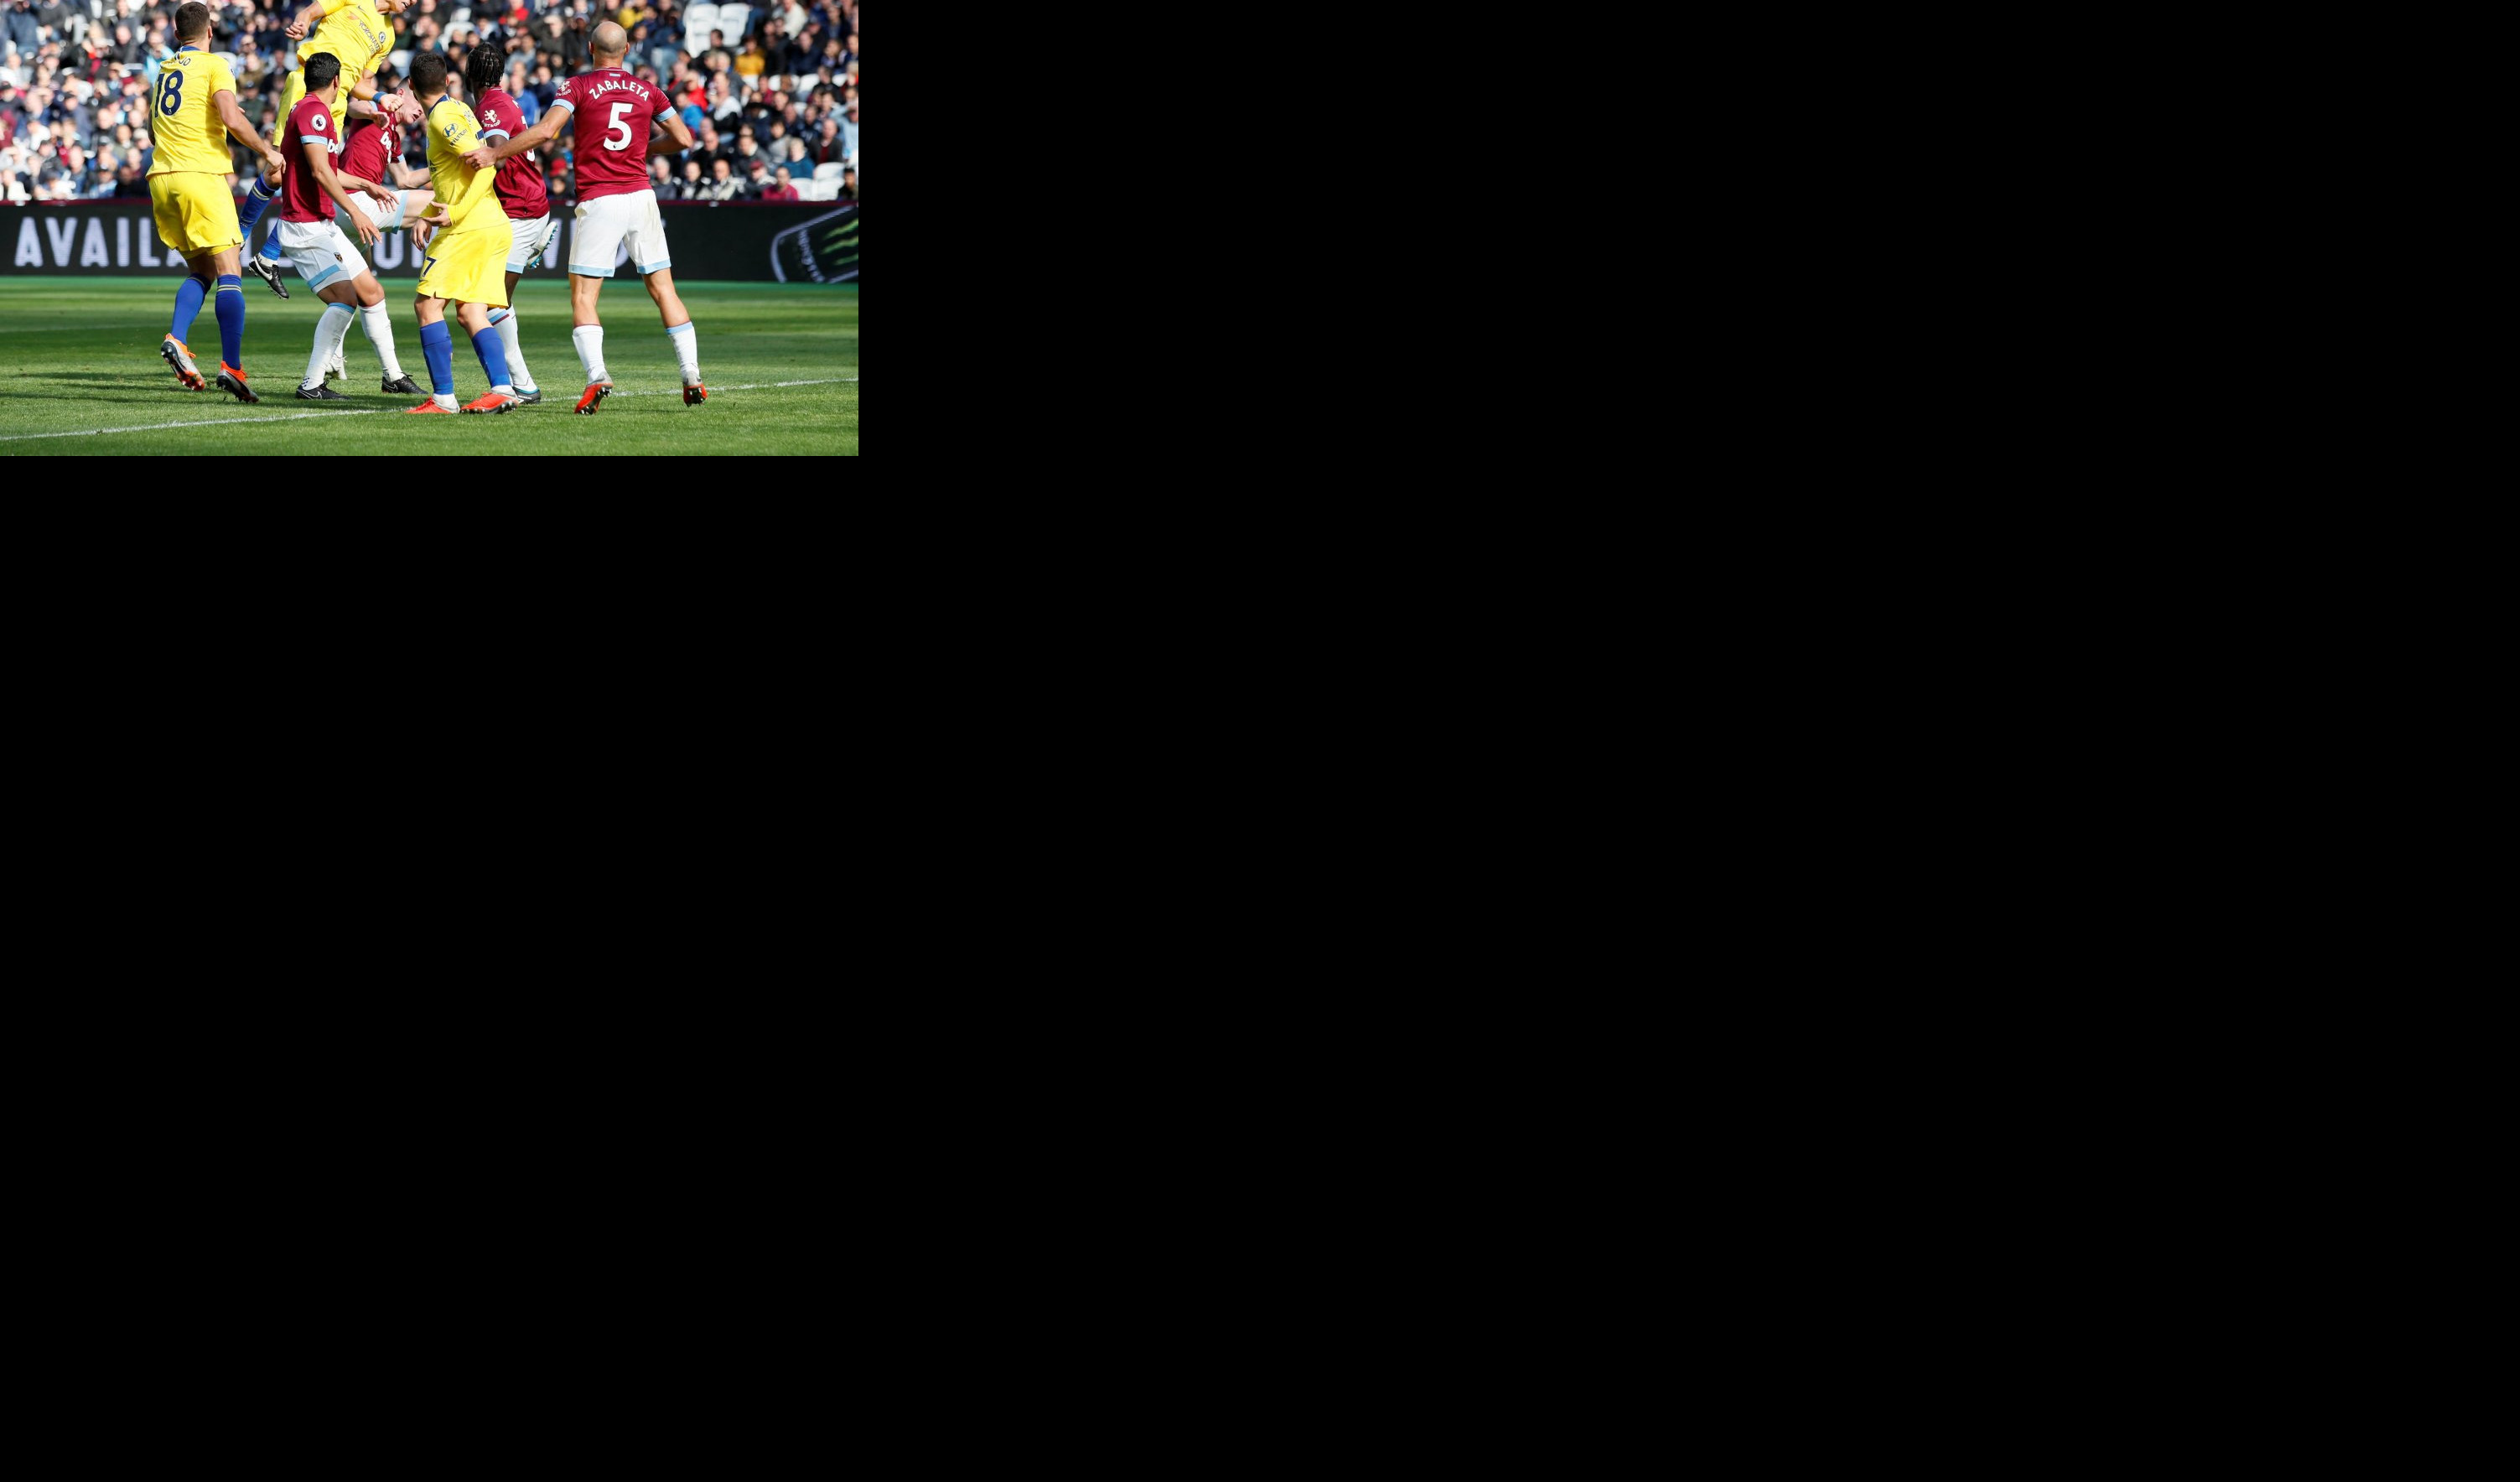 (VIDEO) PREMIJER LIGA:  Čelsi prvi put u sezoni ostao bez celog plena, Arsenalu su dovoljna tri minuta!